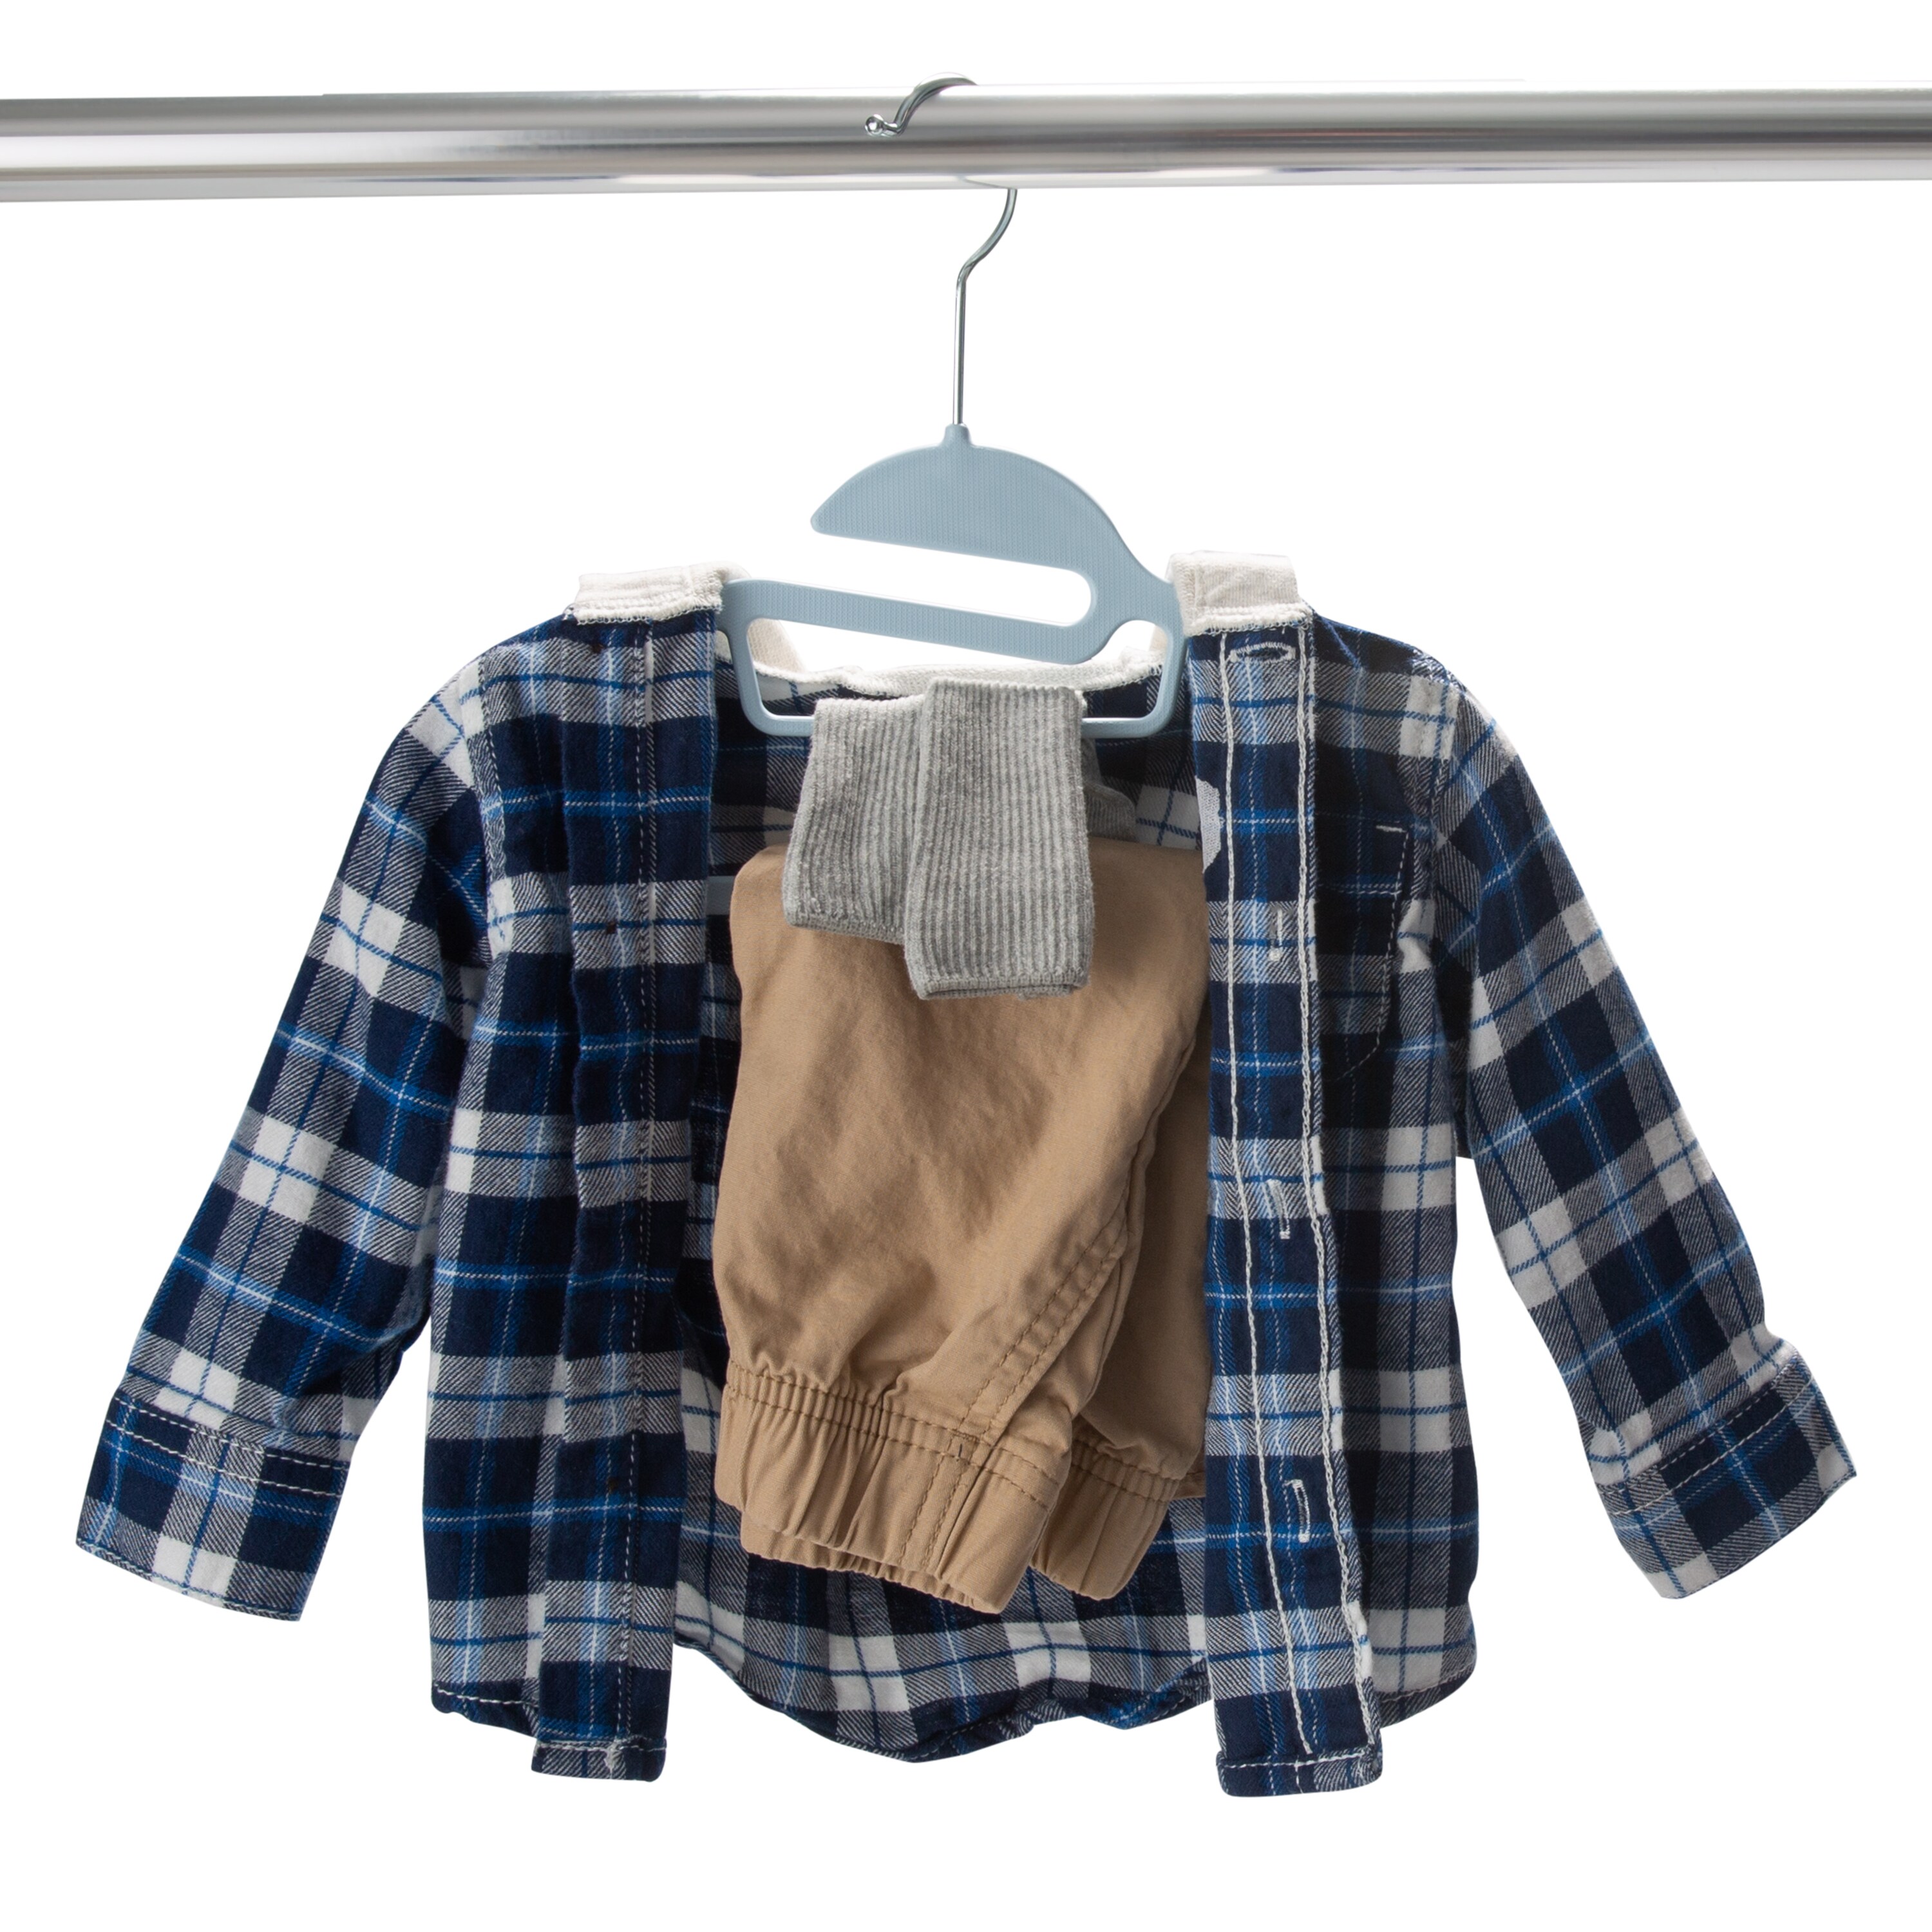 Simplify Kids Velvet Shirt Hangers, 25 Pack, Navy 